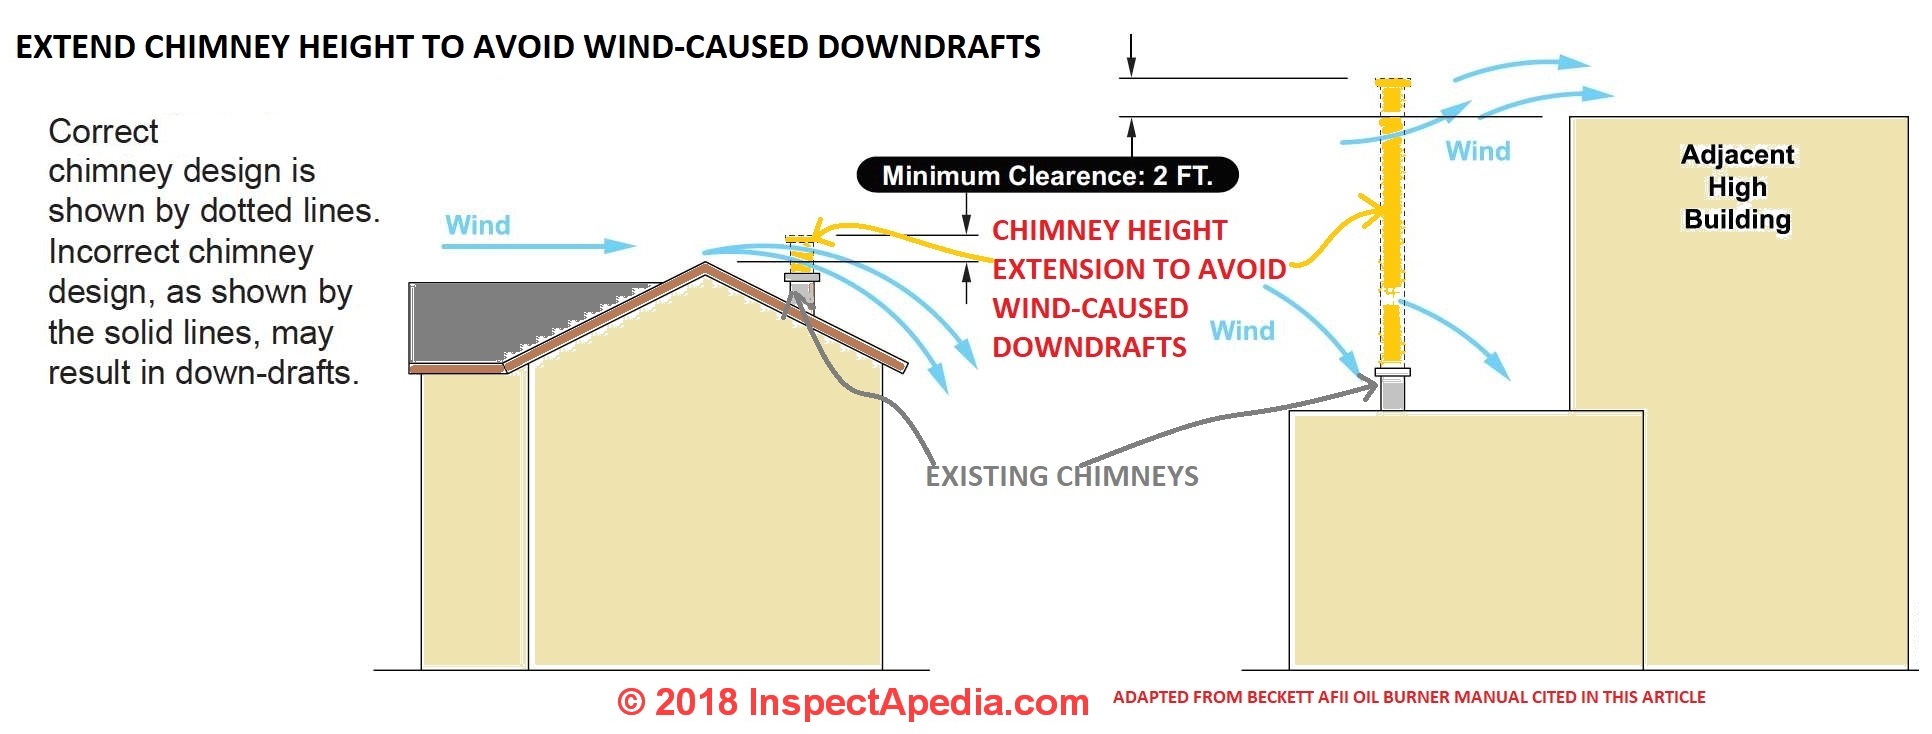 Chimney Height vs Wind Beckett